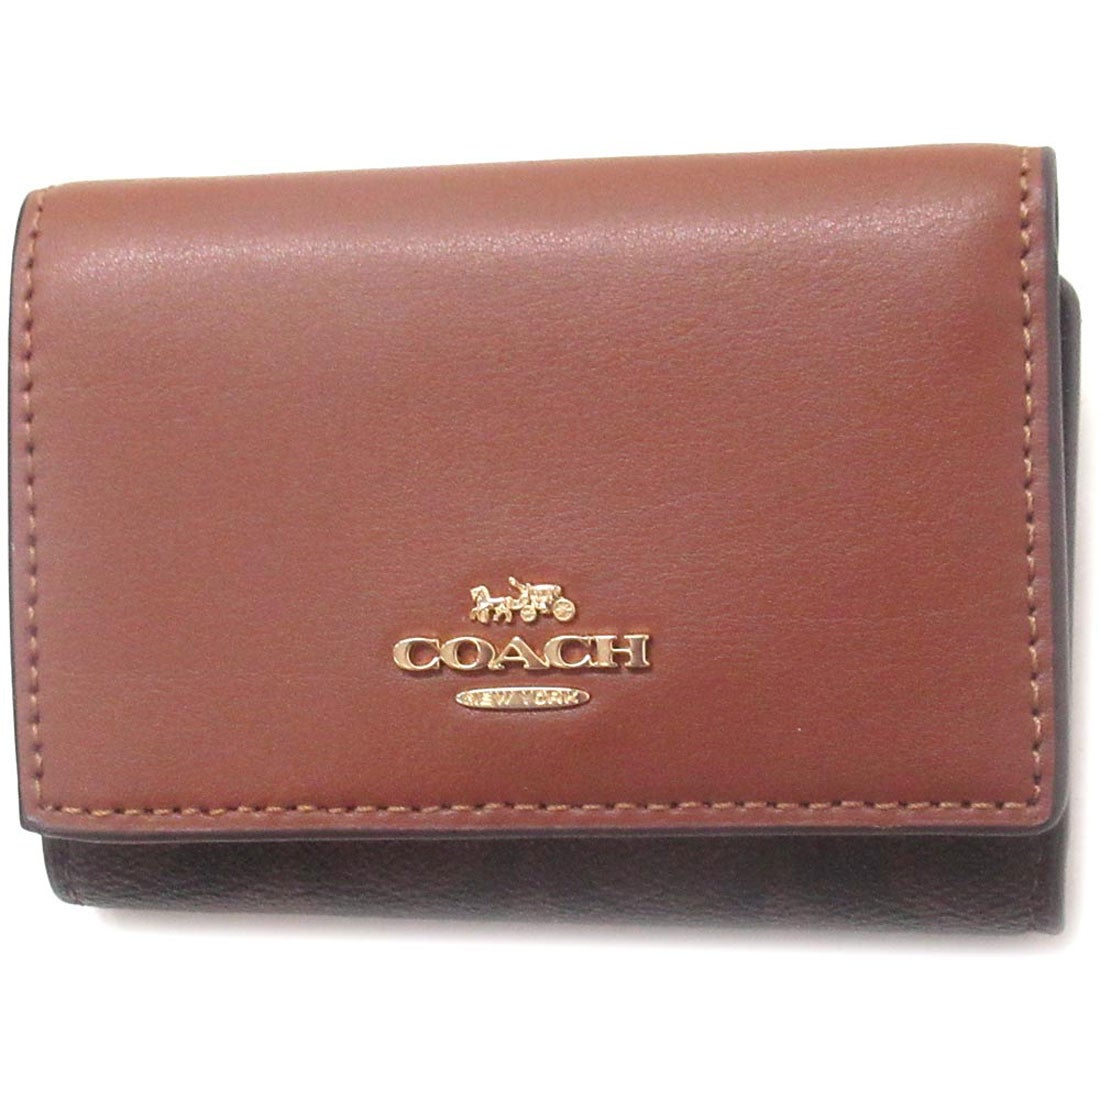 ■【新品】COACH コーチ 3つ折り財布 ローズゴールド